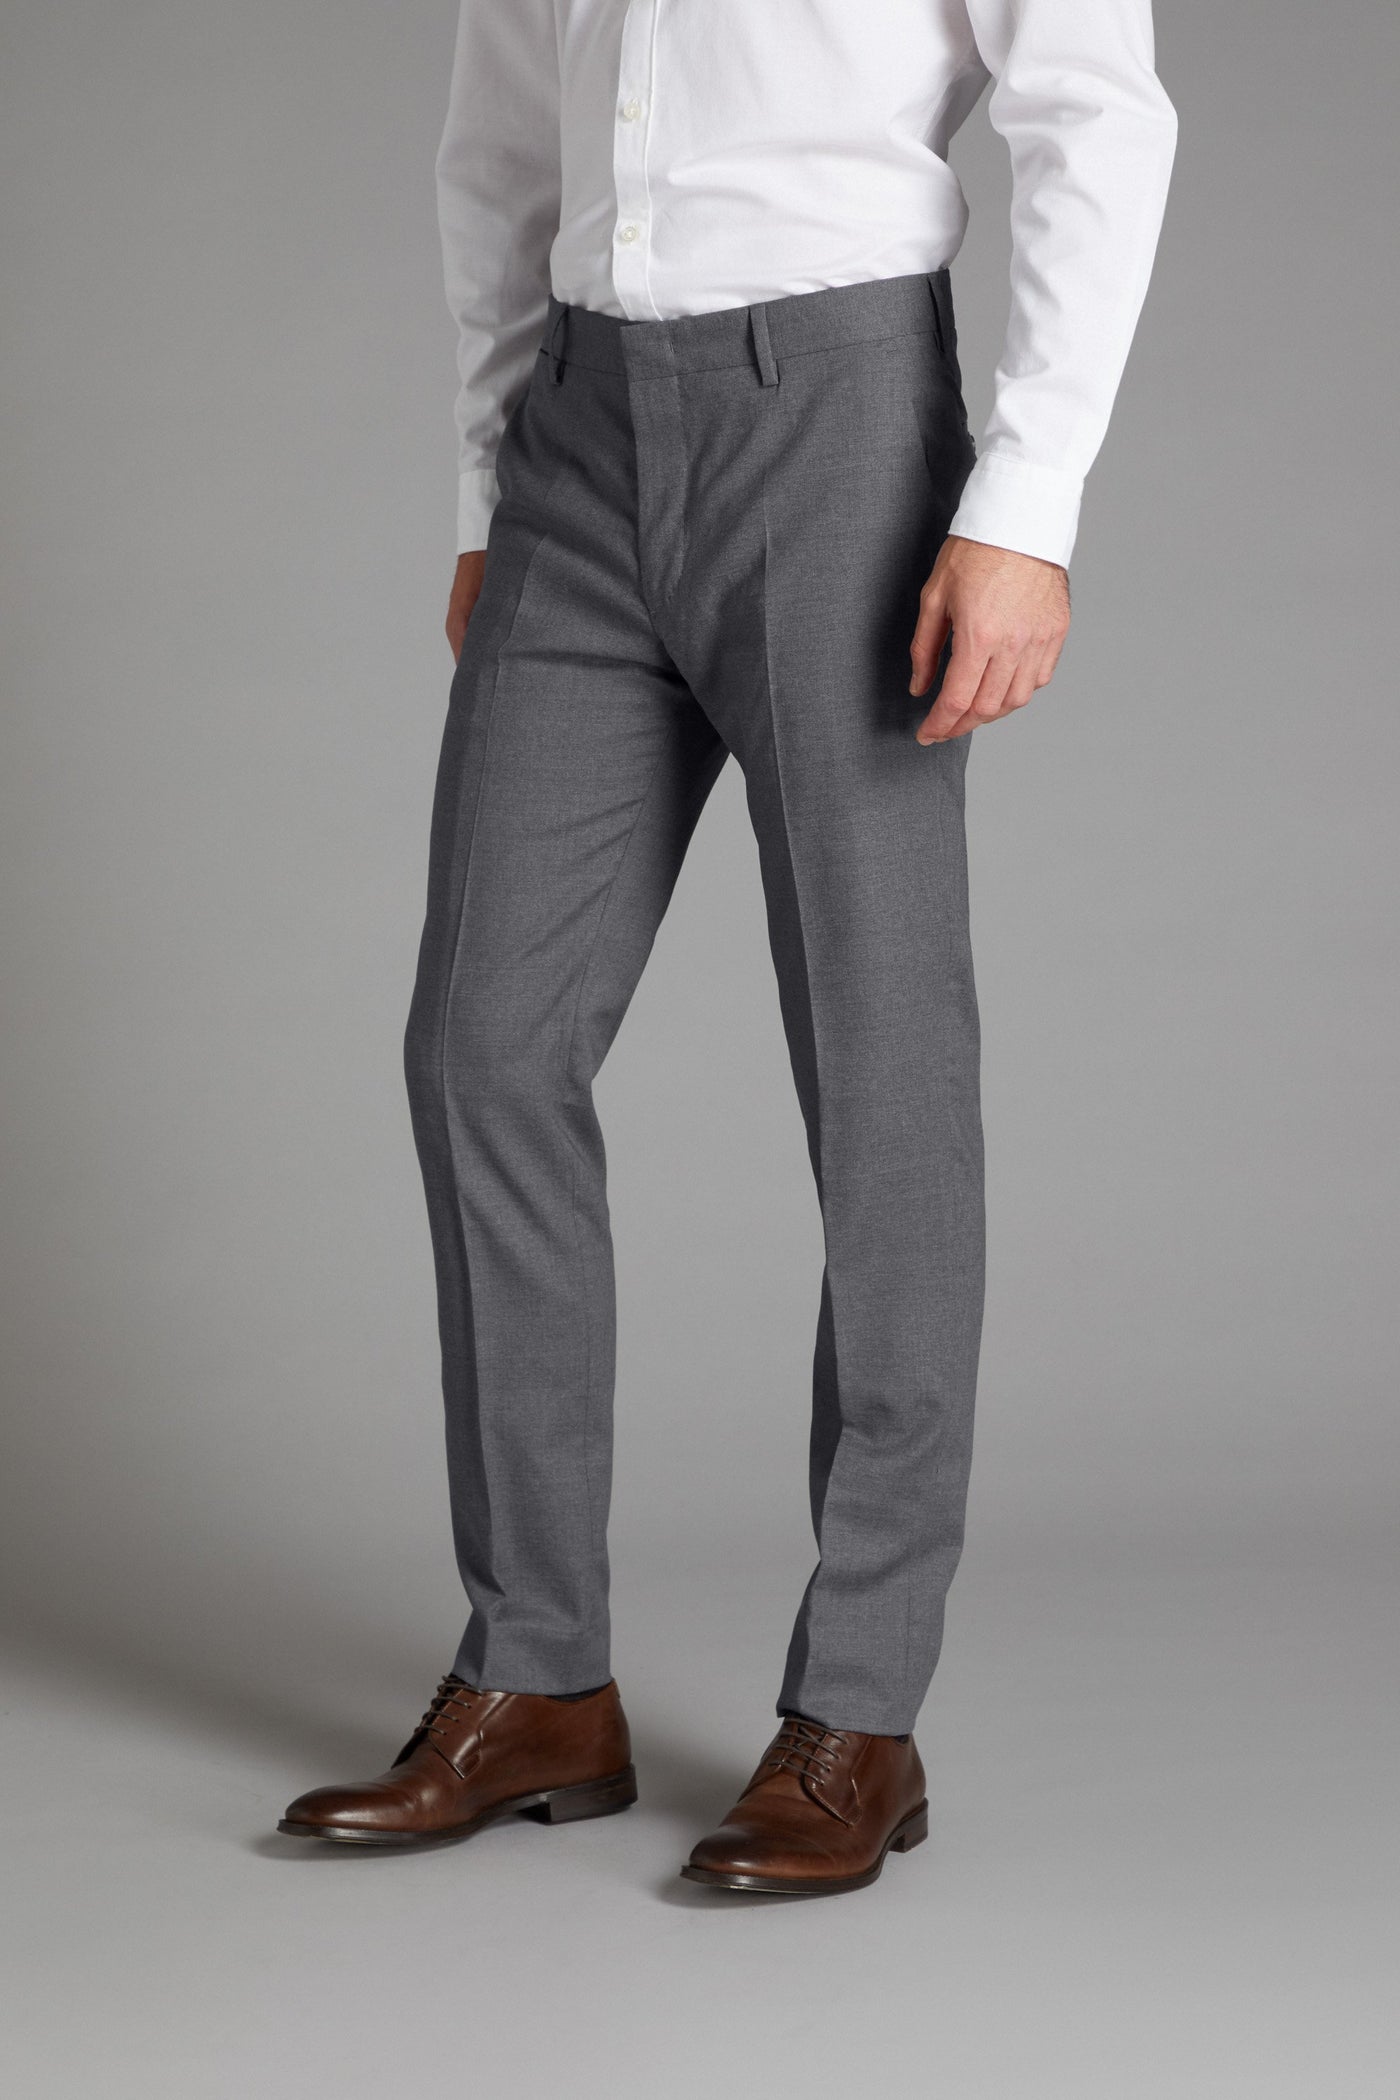 fcity.in - Mancrew Men Slim Fit Formal Trousers Dark Grey Black Combo Pack  Of 2